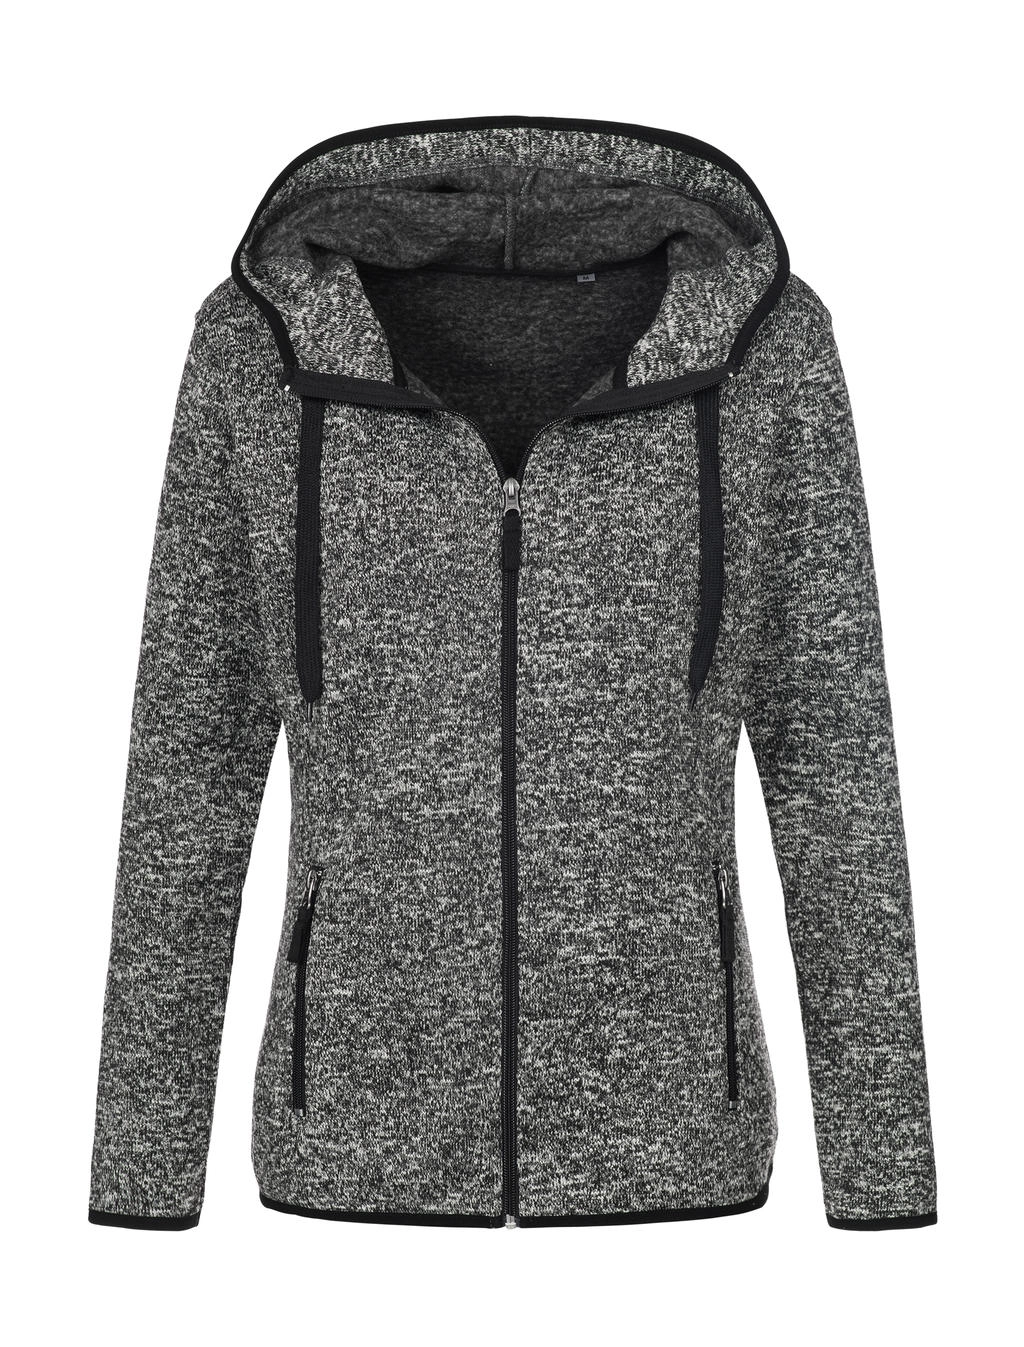 Knit Fleece Jacket Women zum Besticken und Bedrucken in der Farbe Dark Grey Melange mit Ihren Logo, Schriftzug oder Motiv.